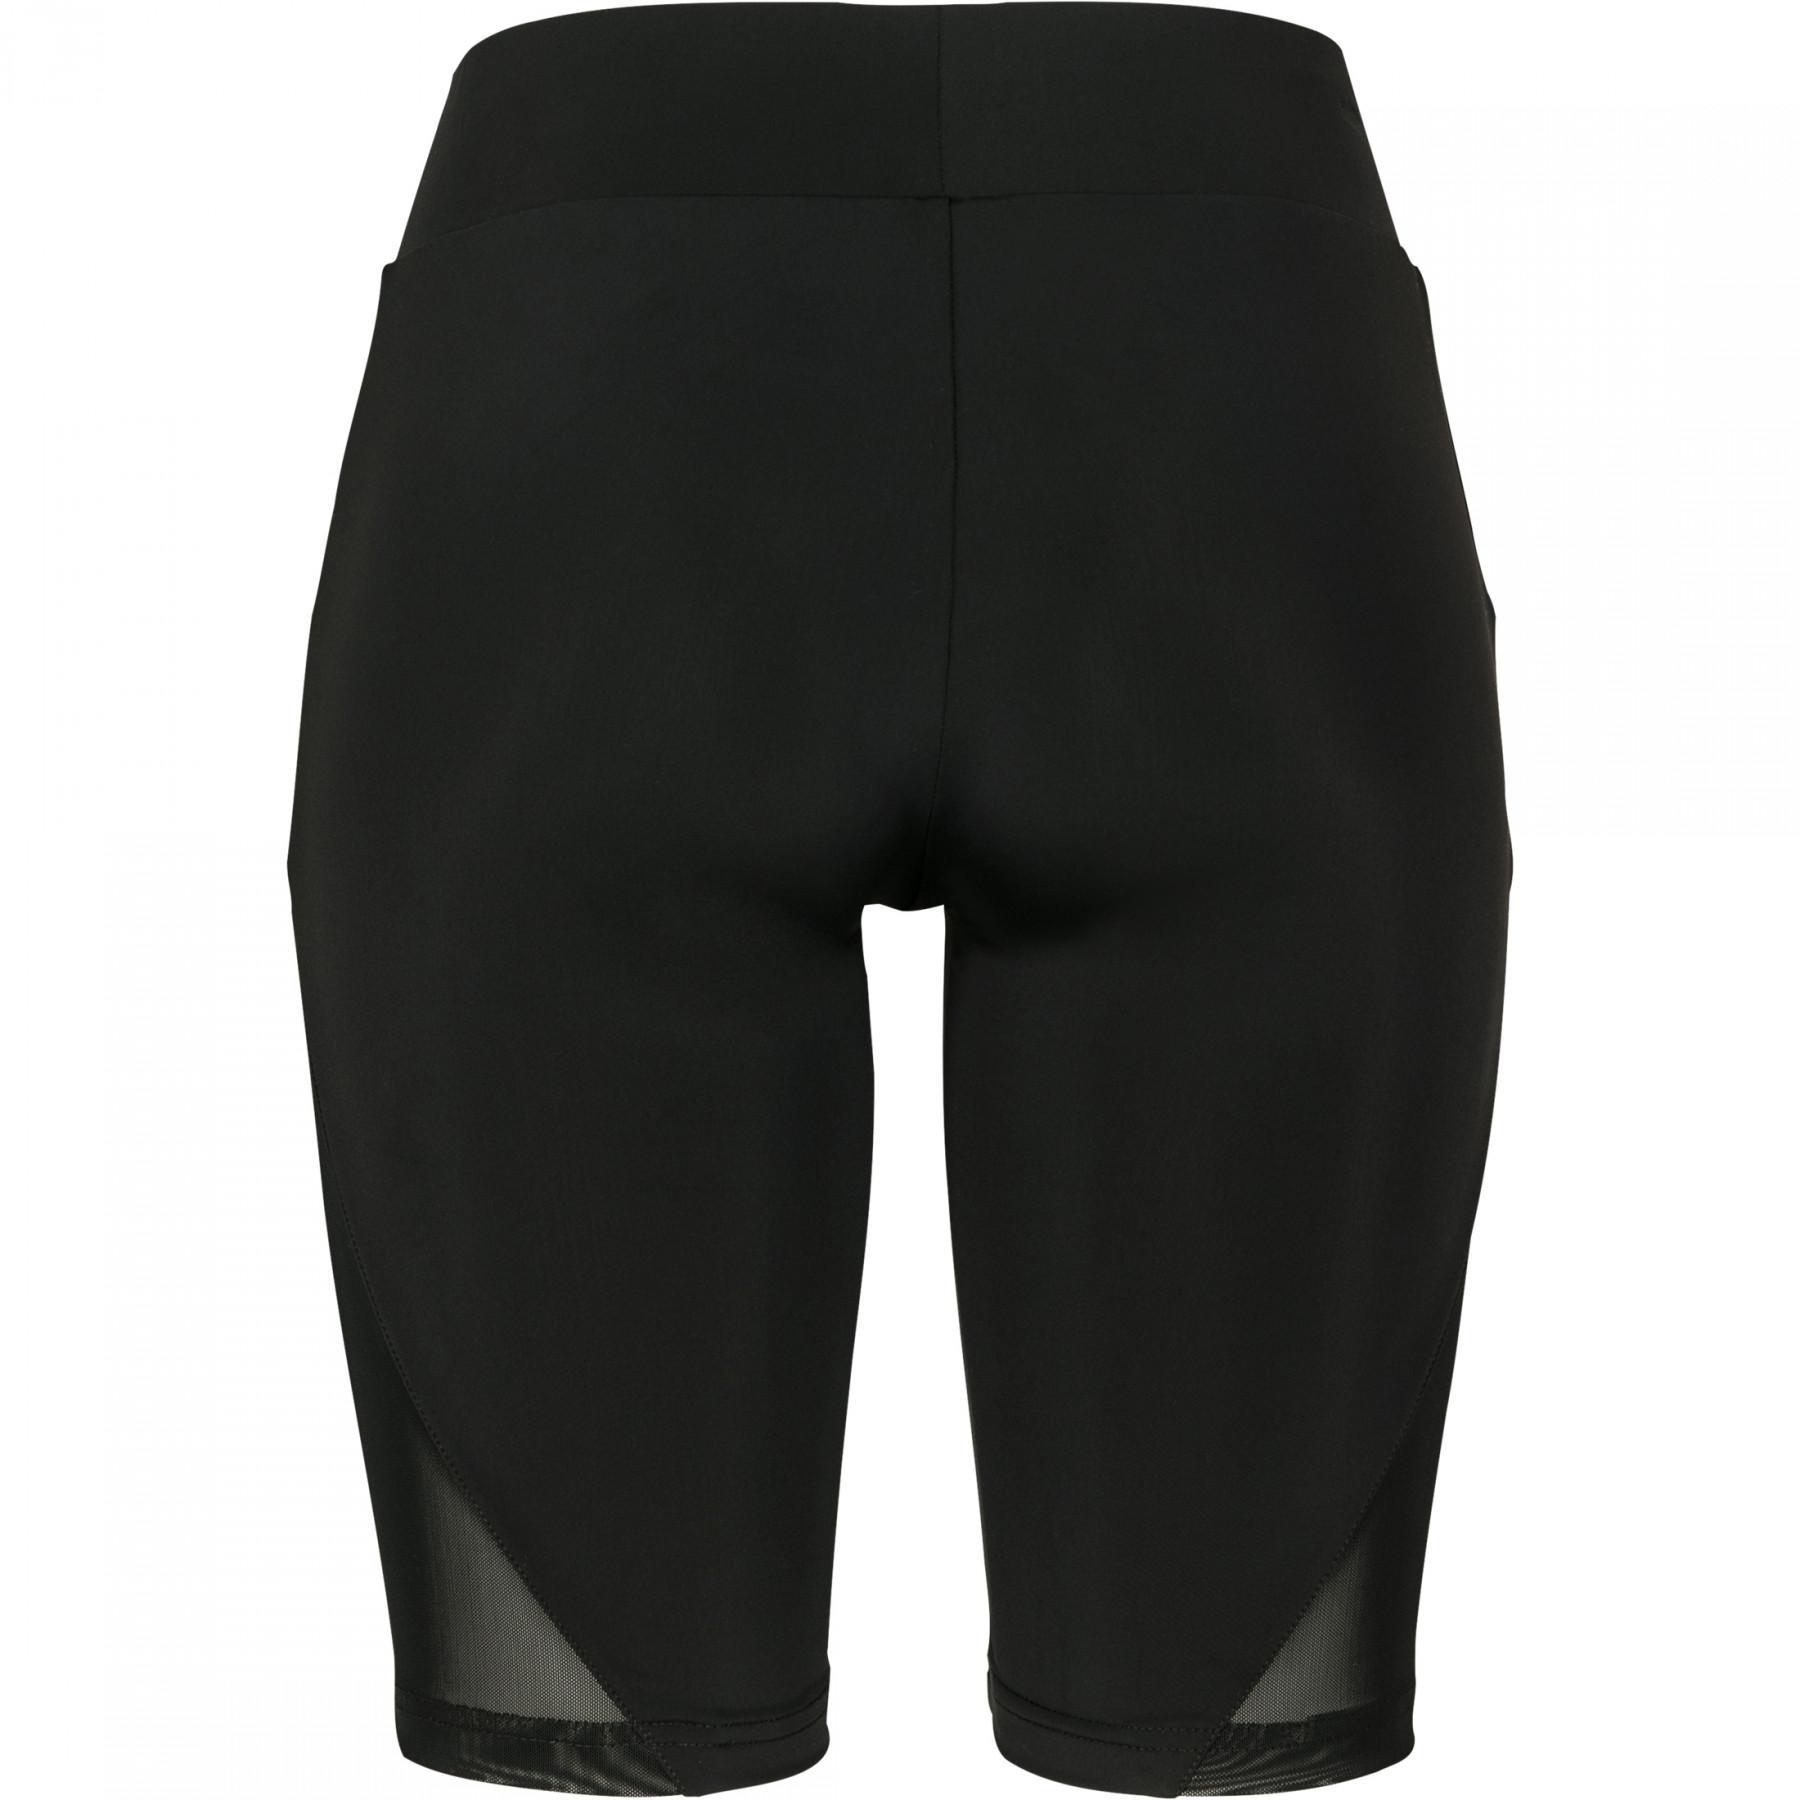 Women's Urban Classic mesh GT shorts